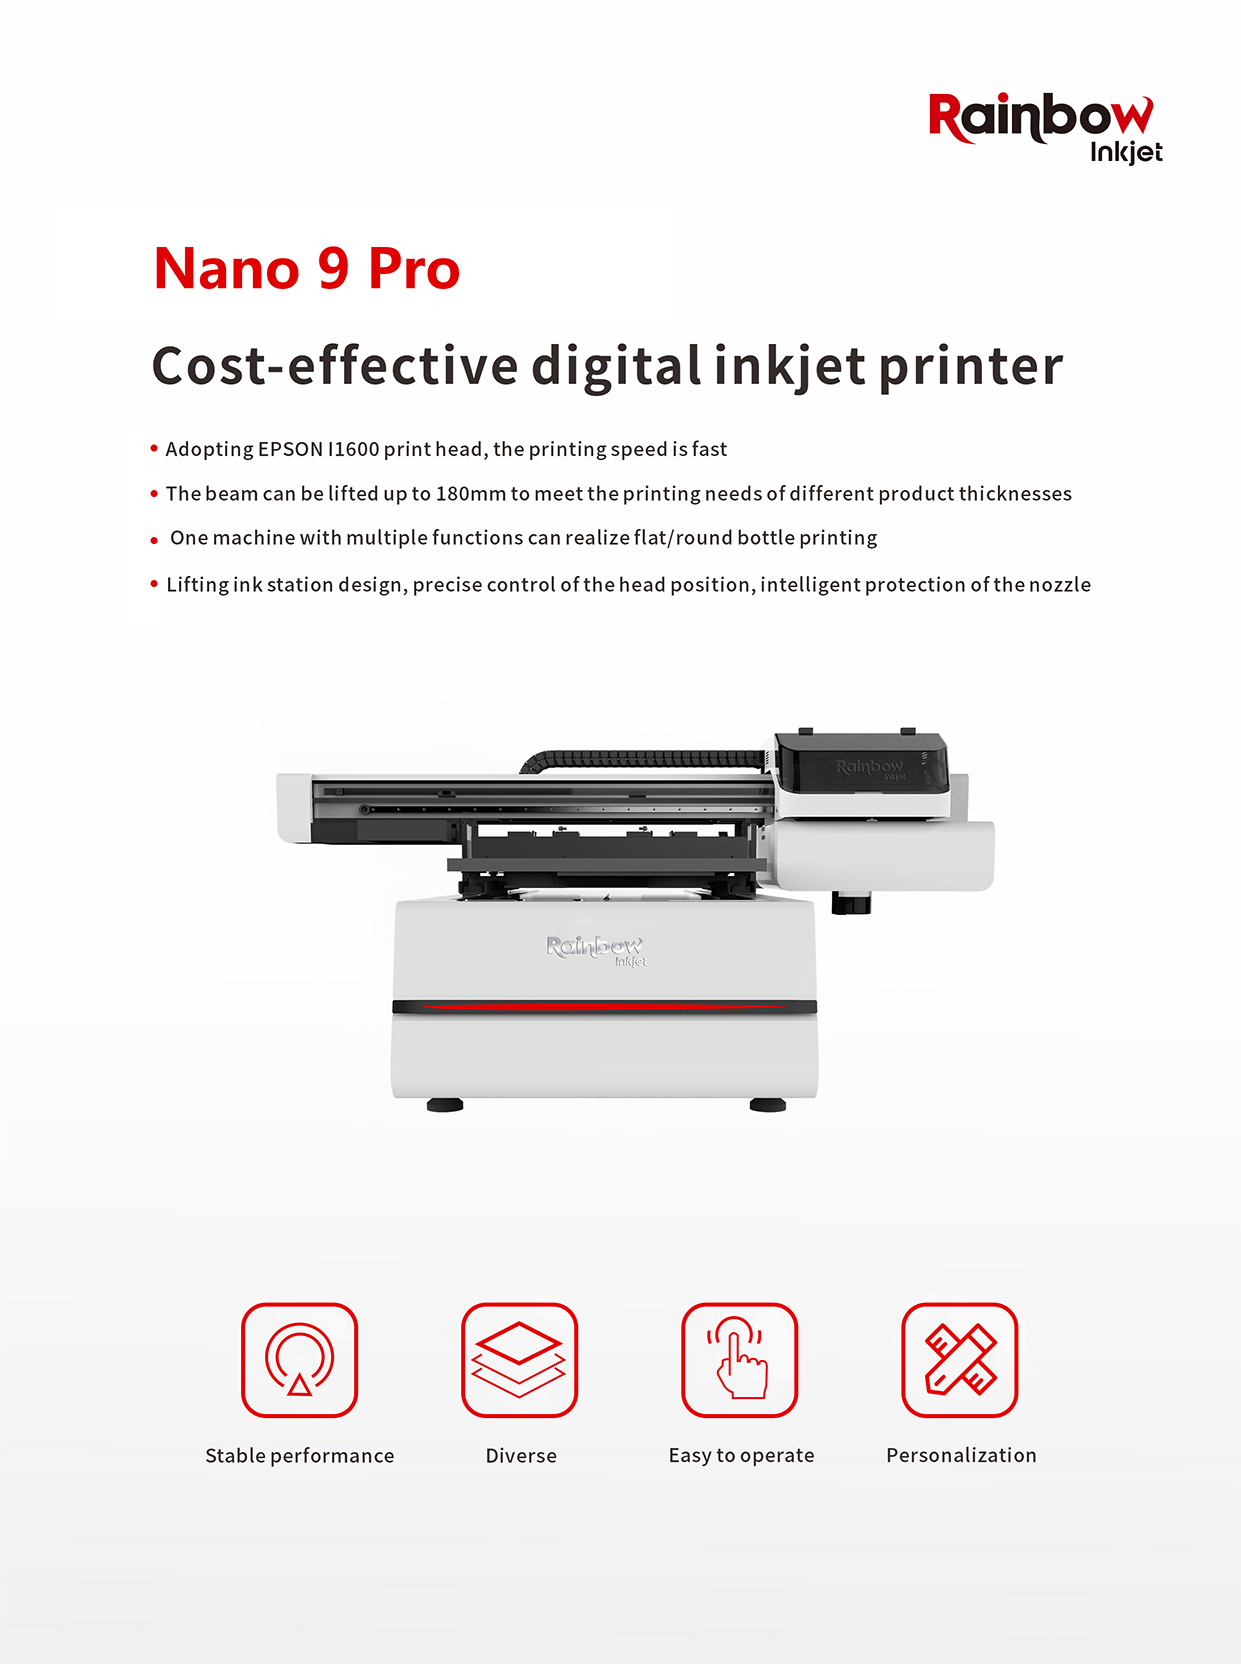 nano 9 pro uv flatbed printer nga adunay i1600 (1)